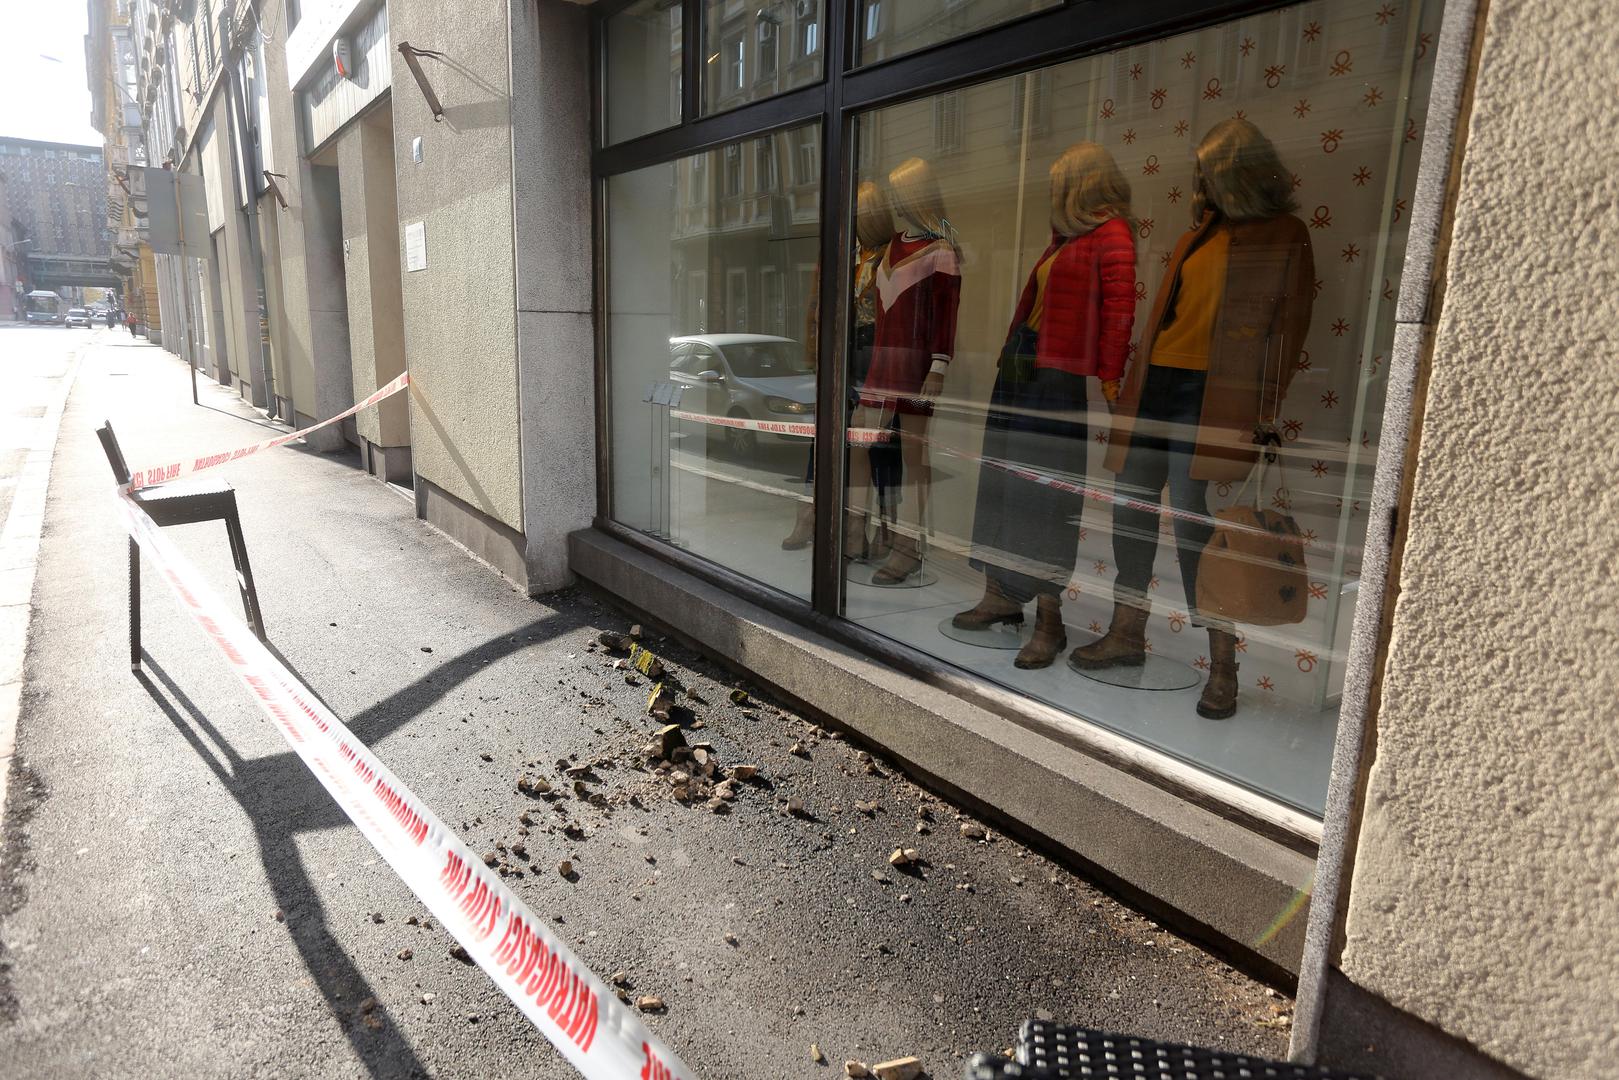 Zapuštene fasade u hrvatskim gradovima nisu samo estetski problem, već i ozbiljna prijetnja prolaznicima.

